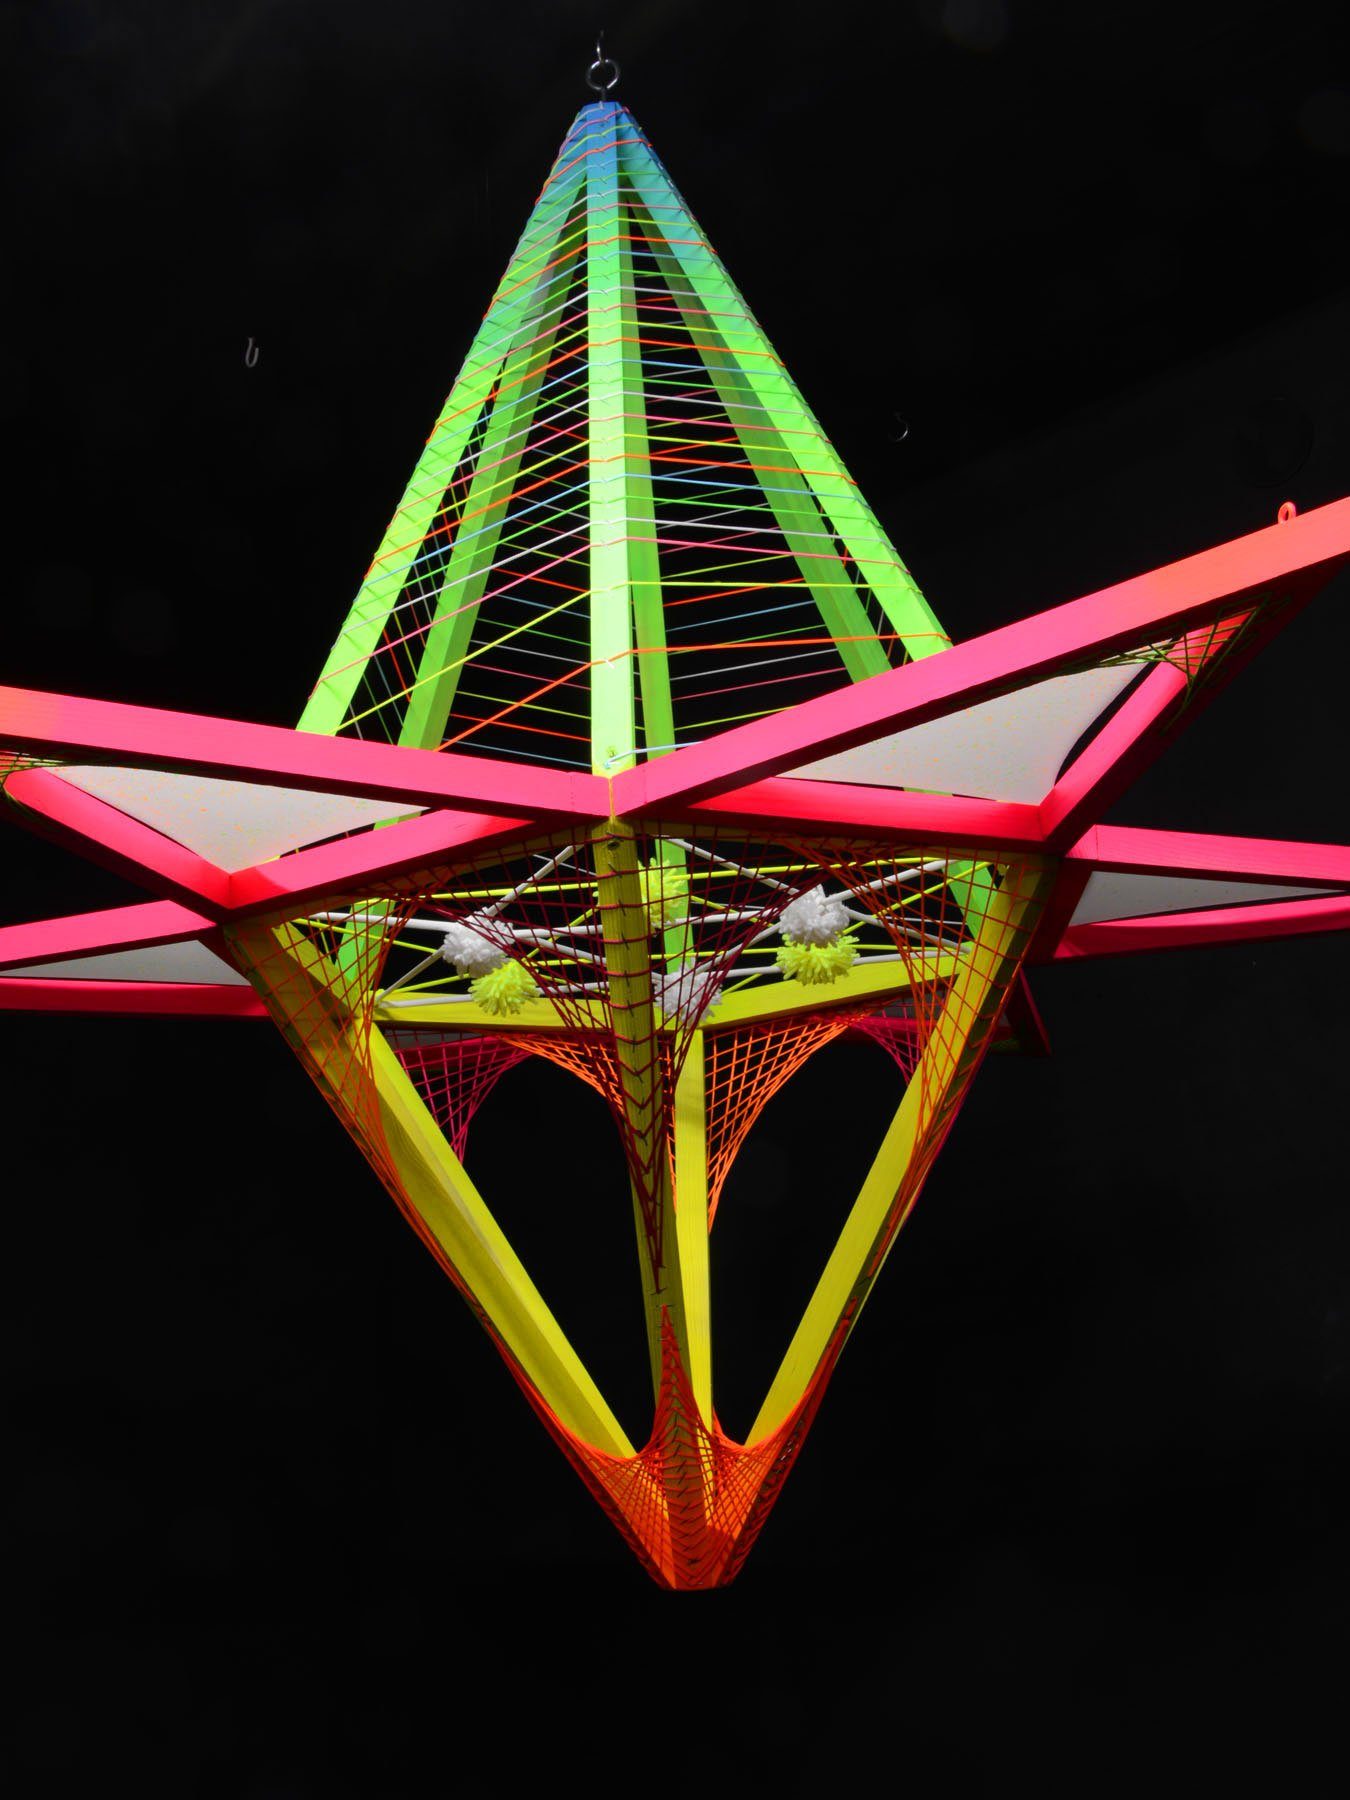 PSYWORK Dekoobjekt Schwarzlicht 3D StringArt Sechseck mit Dreiecken "Neon Flower" 1,30m, UV-aktiv, leuchtet unter Schwarzlicht